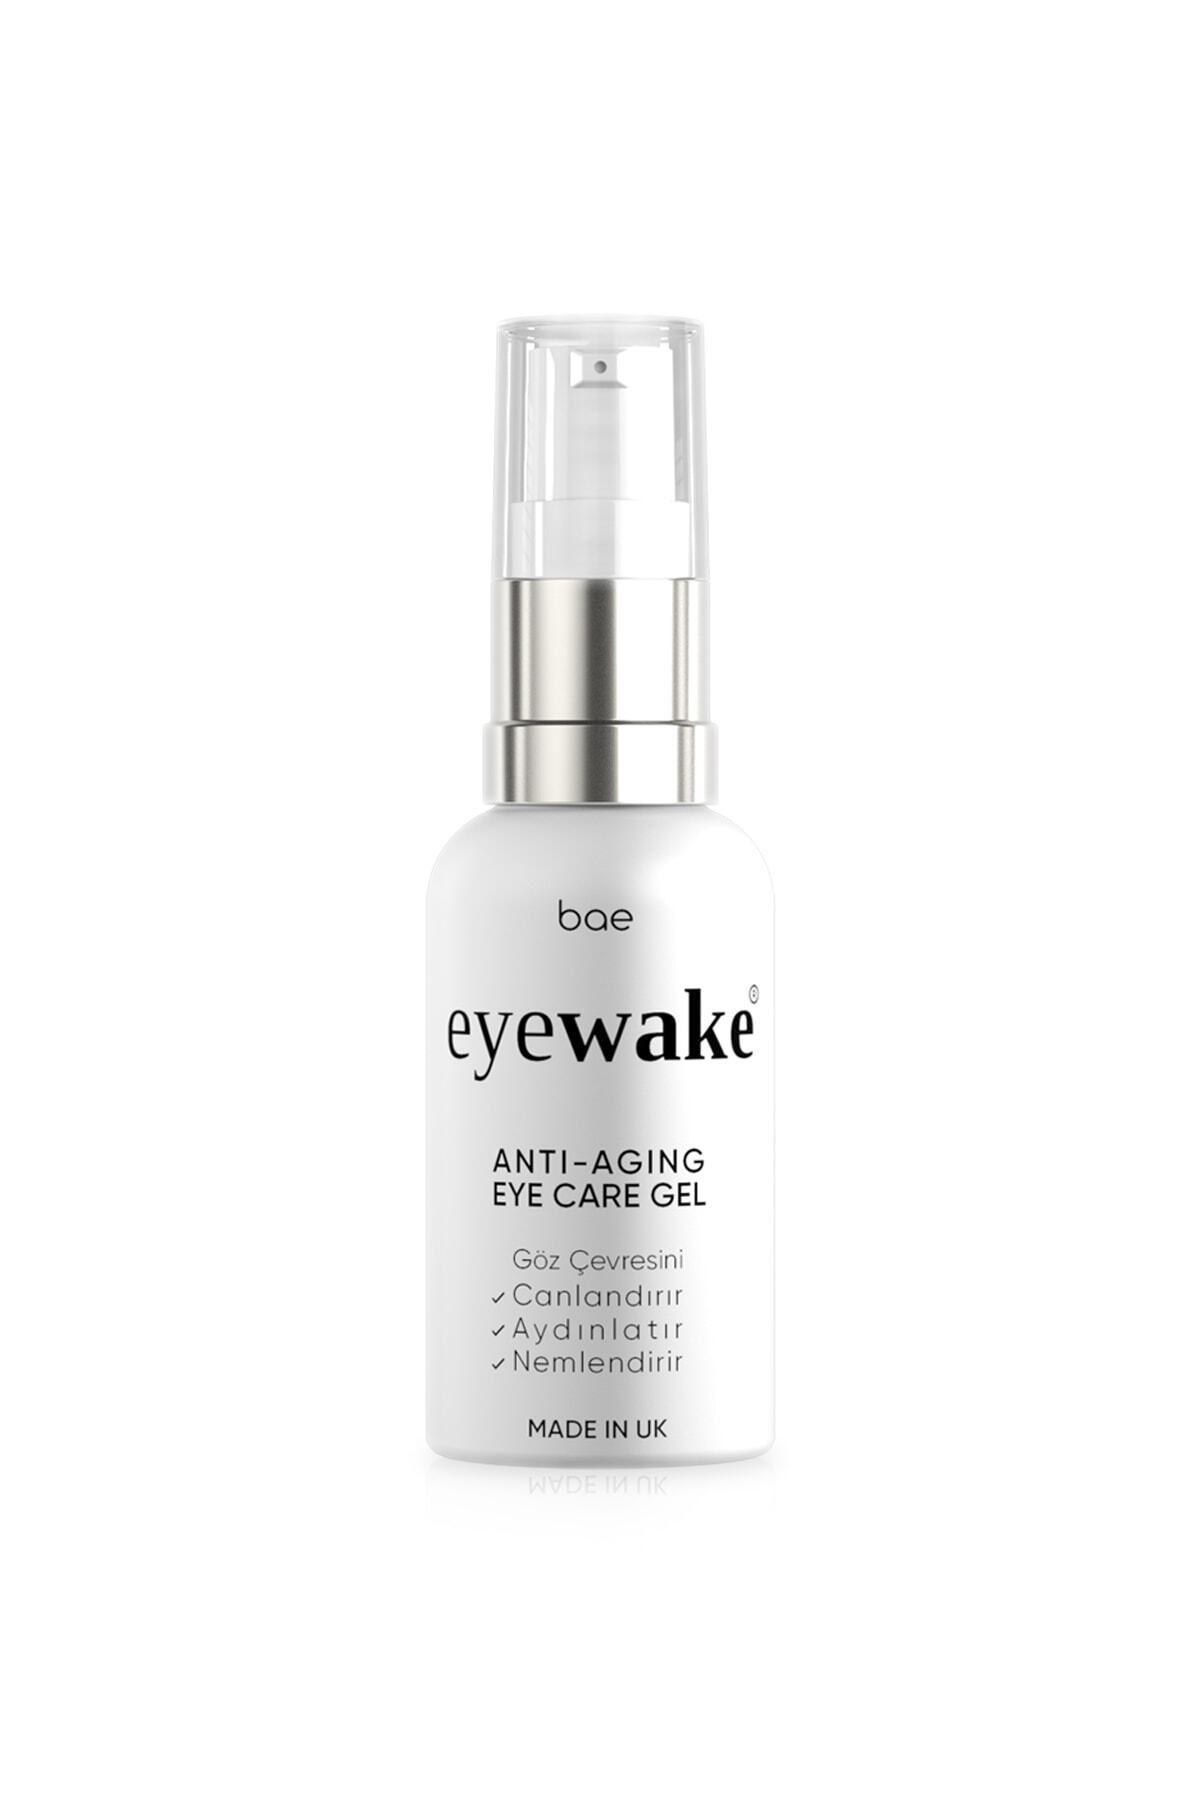 eyewake Yaşlandırma Karşıtı Göz Çevresi Bakım Jeli - eyewake Anti-Aging Eye Care Gel